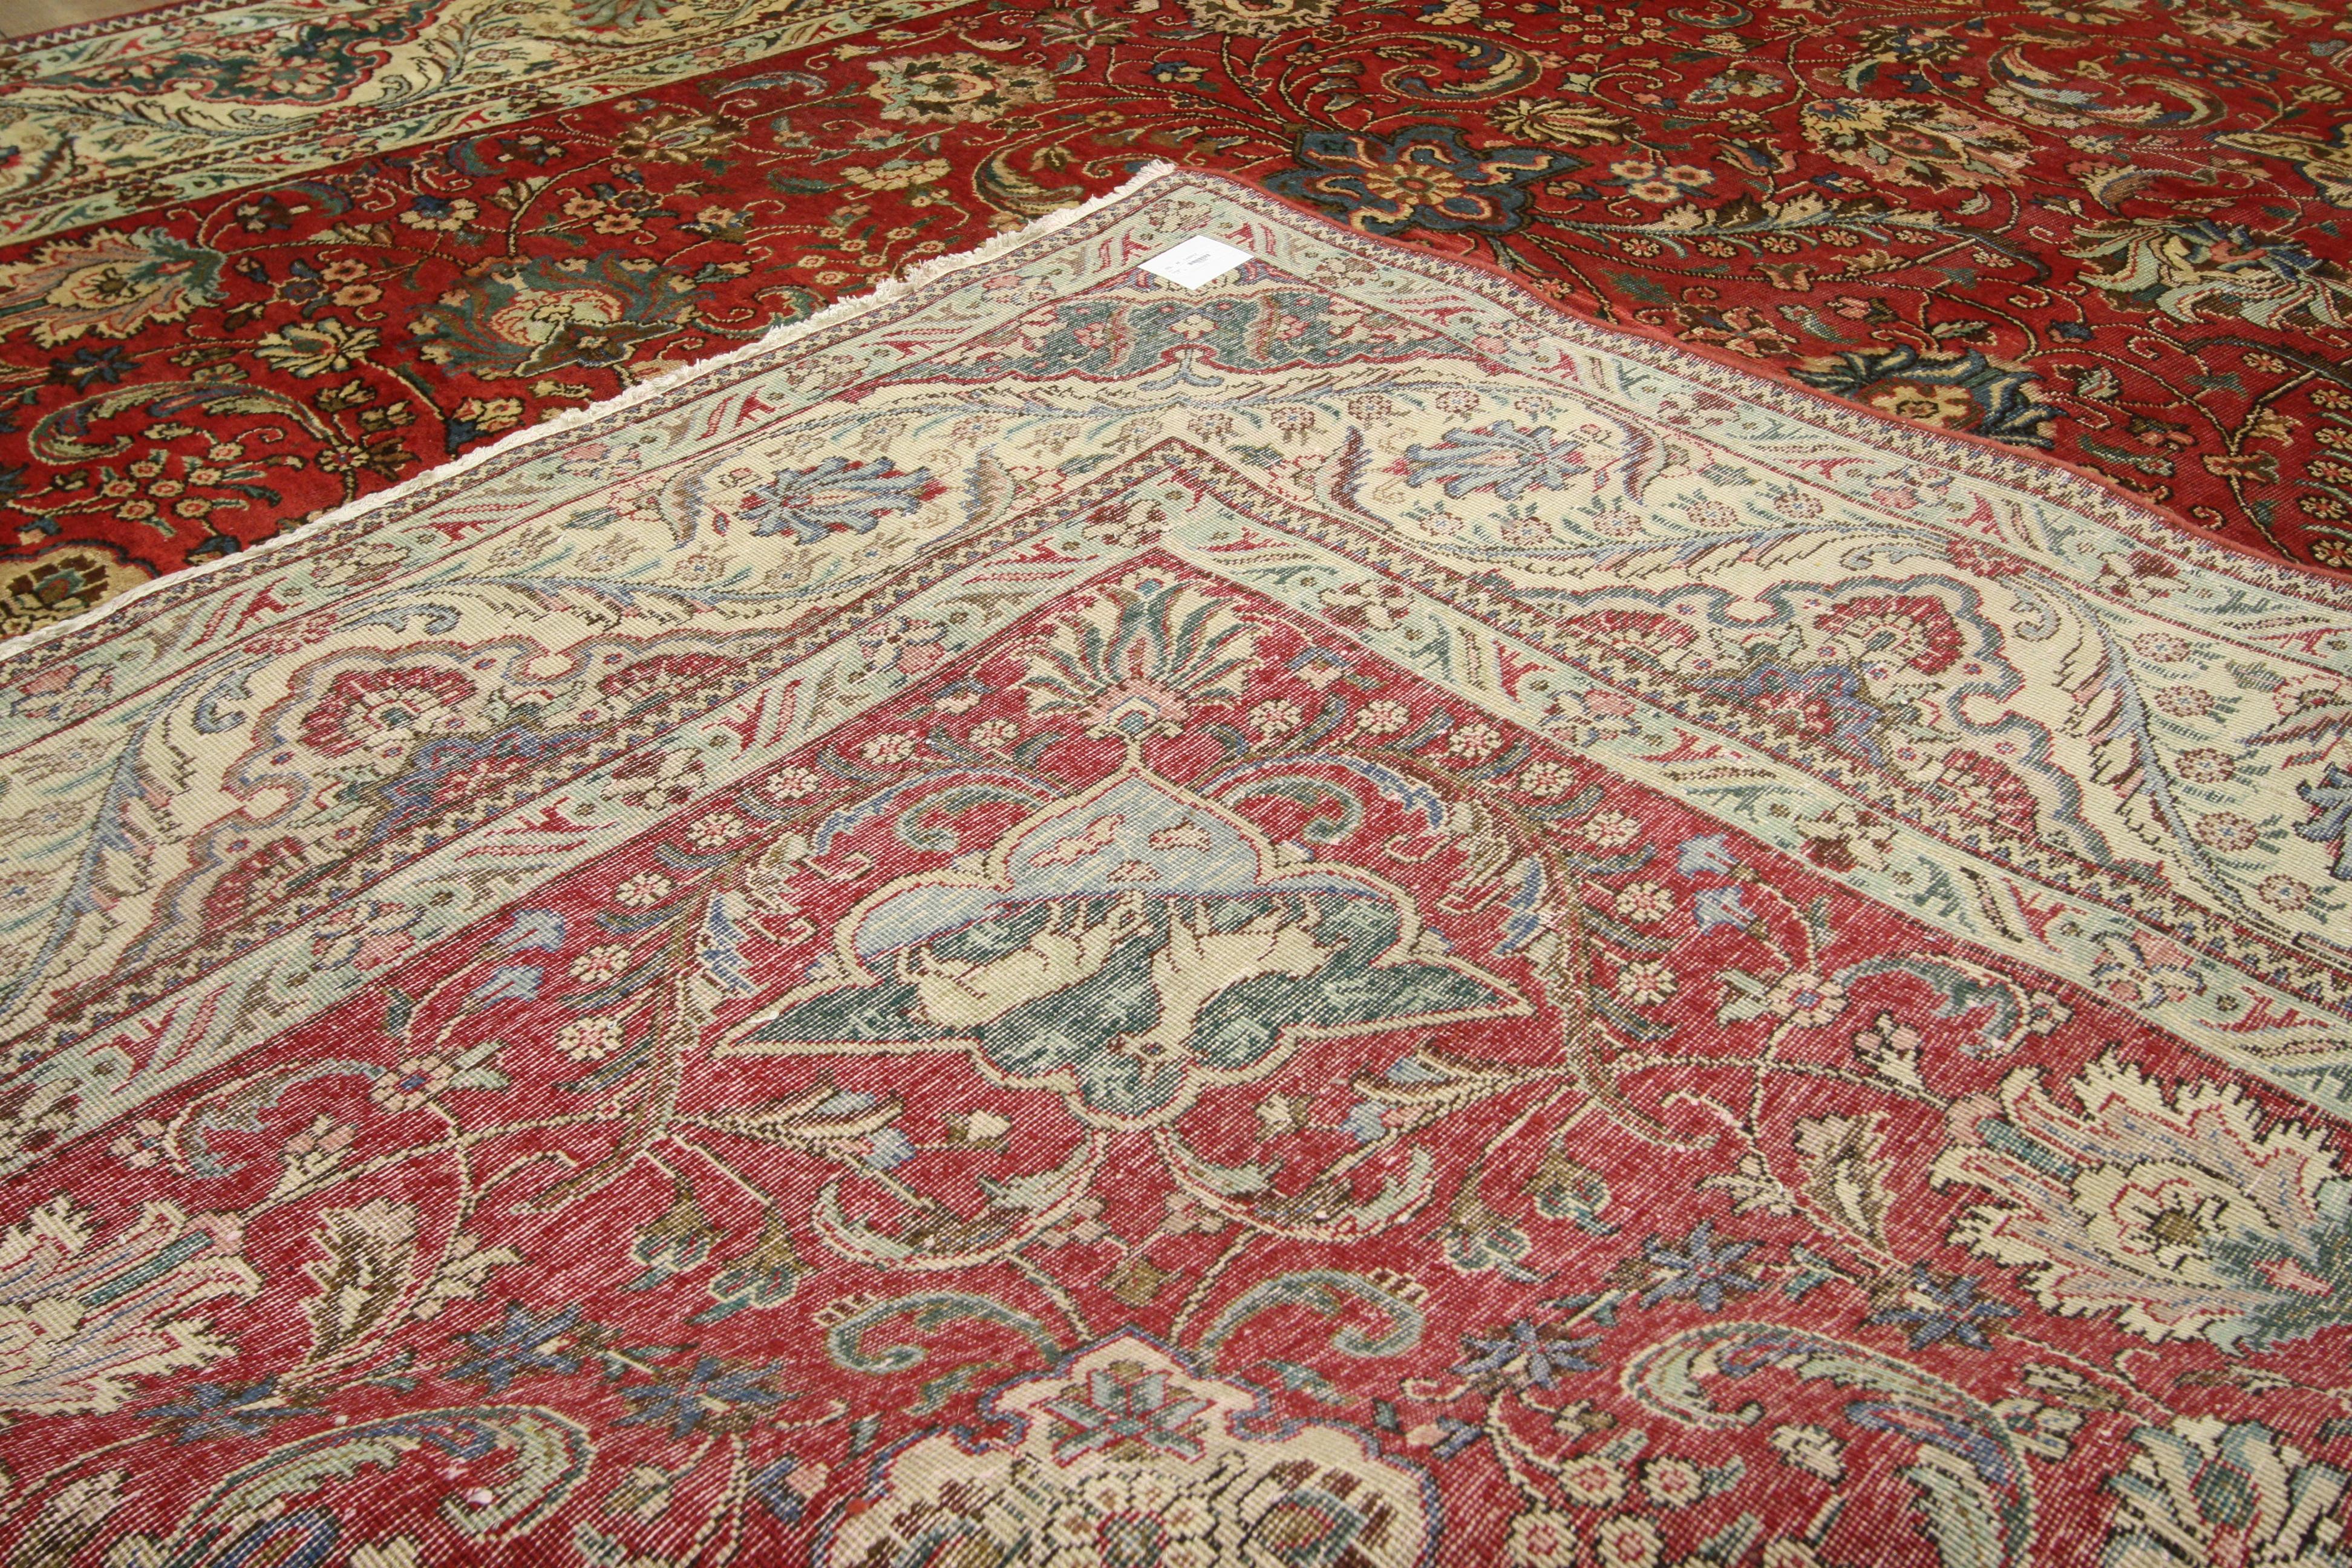 76280 Persischer Tabriz-Teppich im traditionellen Kolonial- und Föderalstil. Dieser handgeknüpfte Teppich aus alter persischer Tabriz-Wolle zeichnet sich durch ein Allover-Muster aus, das von einer klassischen Bordüre umgeben ist und so ein